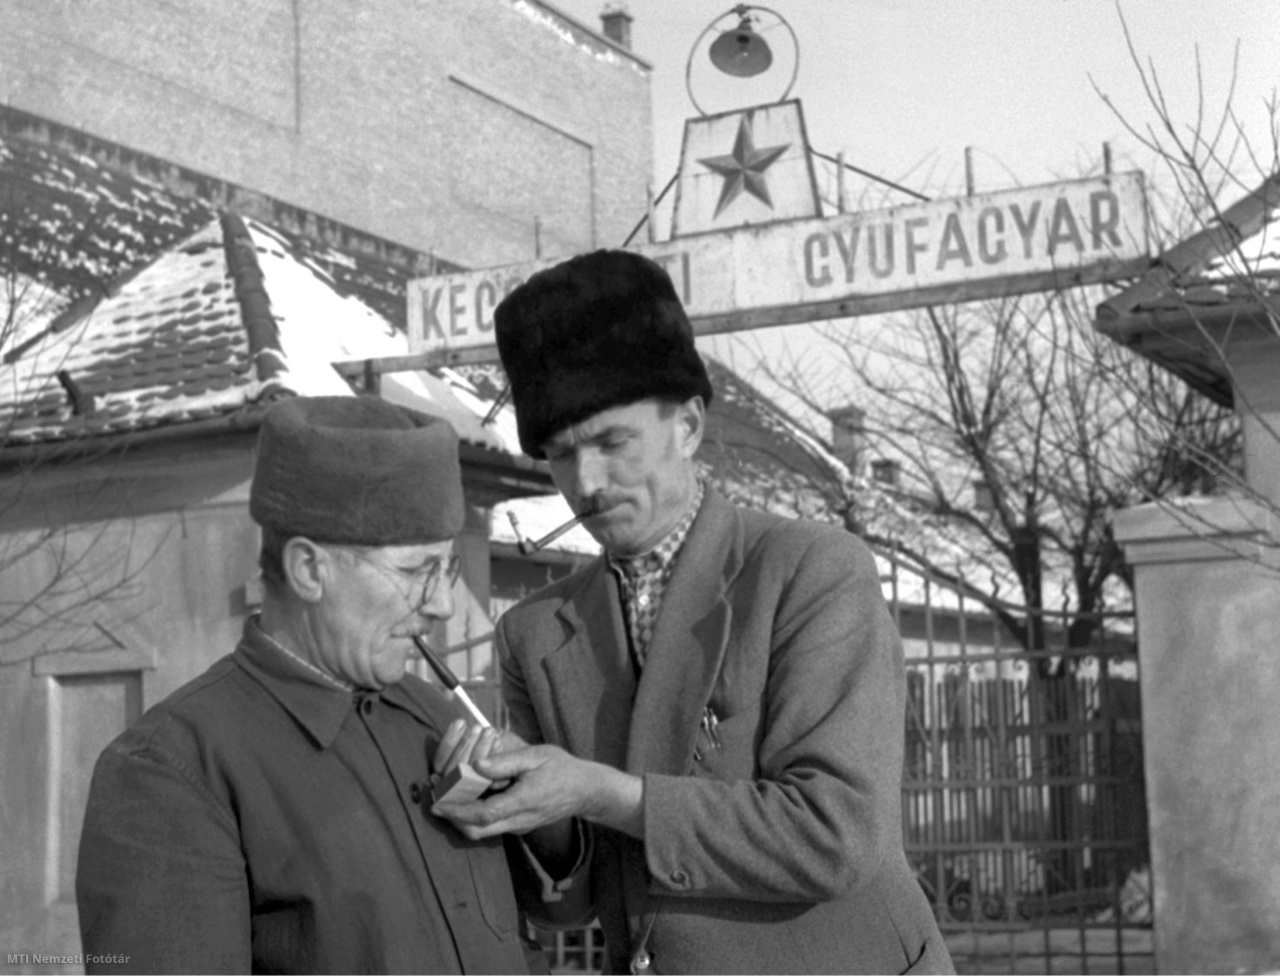 Kecskemét, 1956. február 5. A Kecskeméti Gyufagyár dolgozói pipára gyújtanak a gyárban készült gyufával az épületen kívül, a kapubejárat előtt.